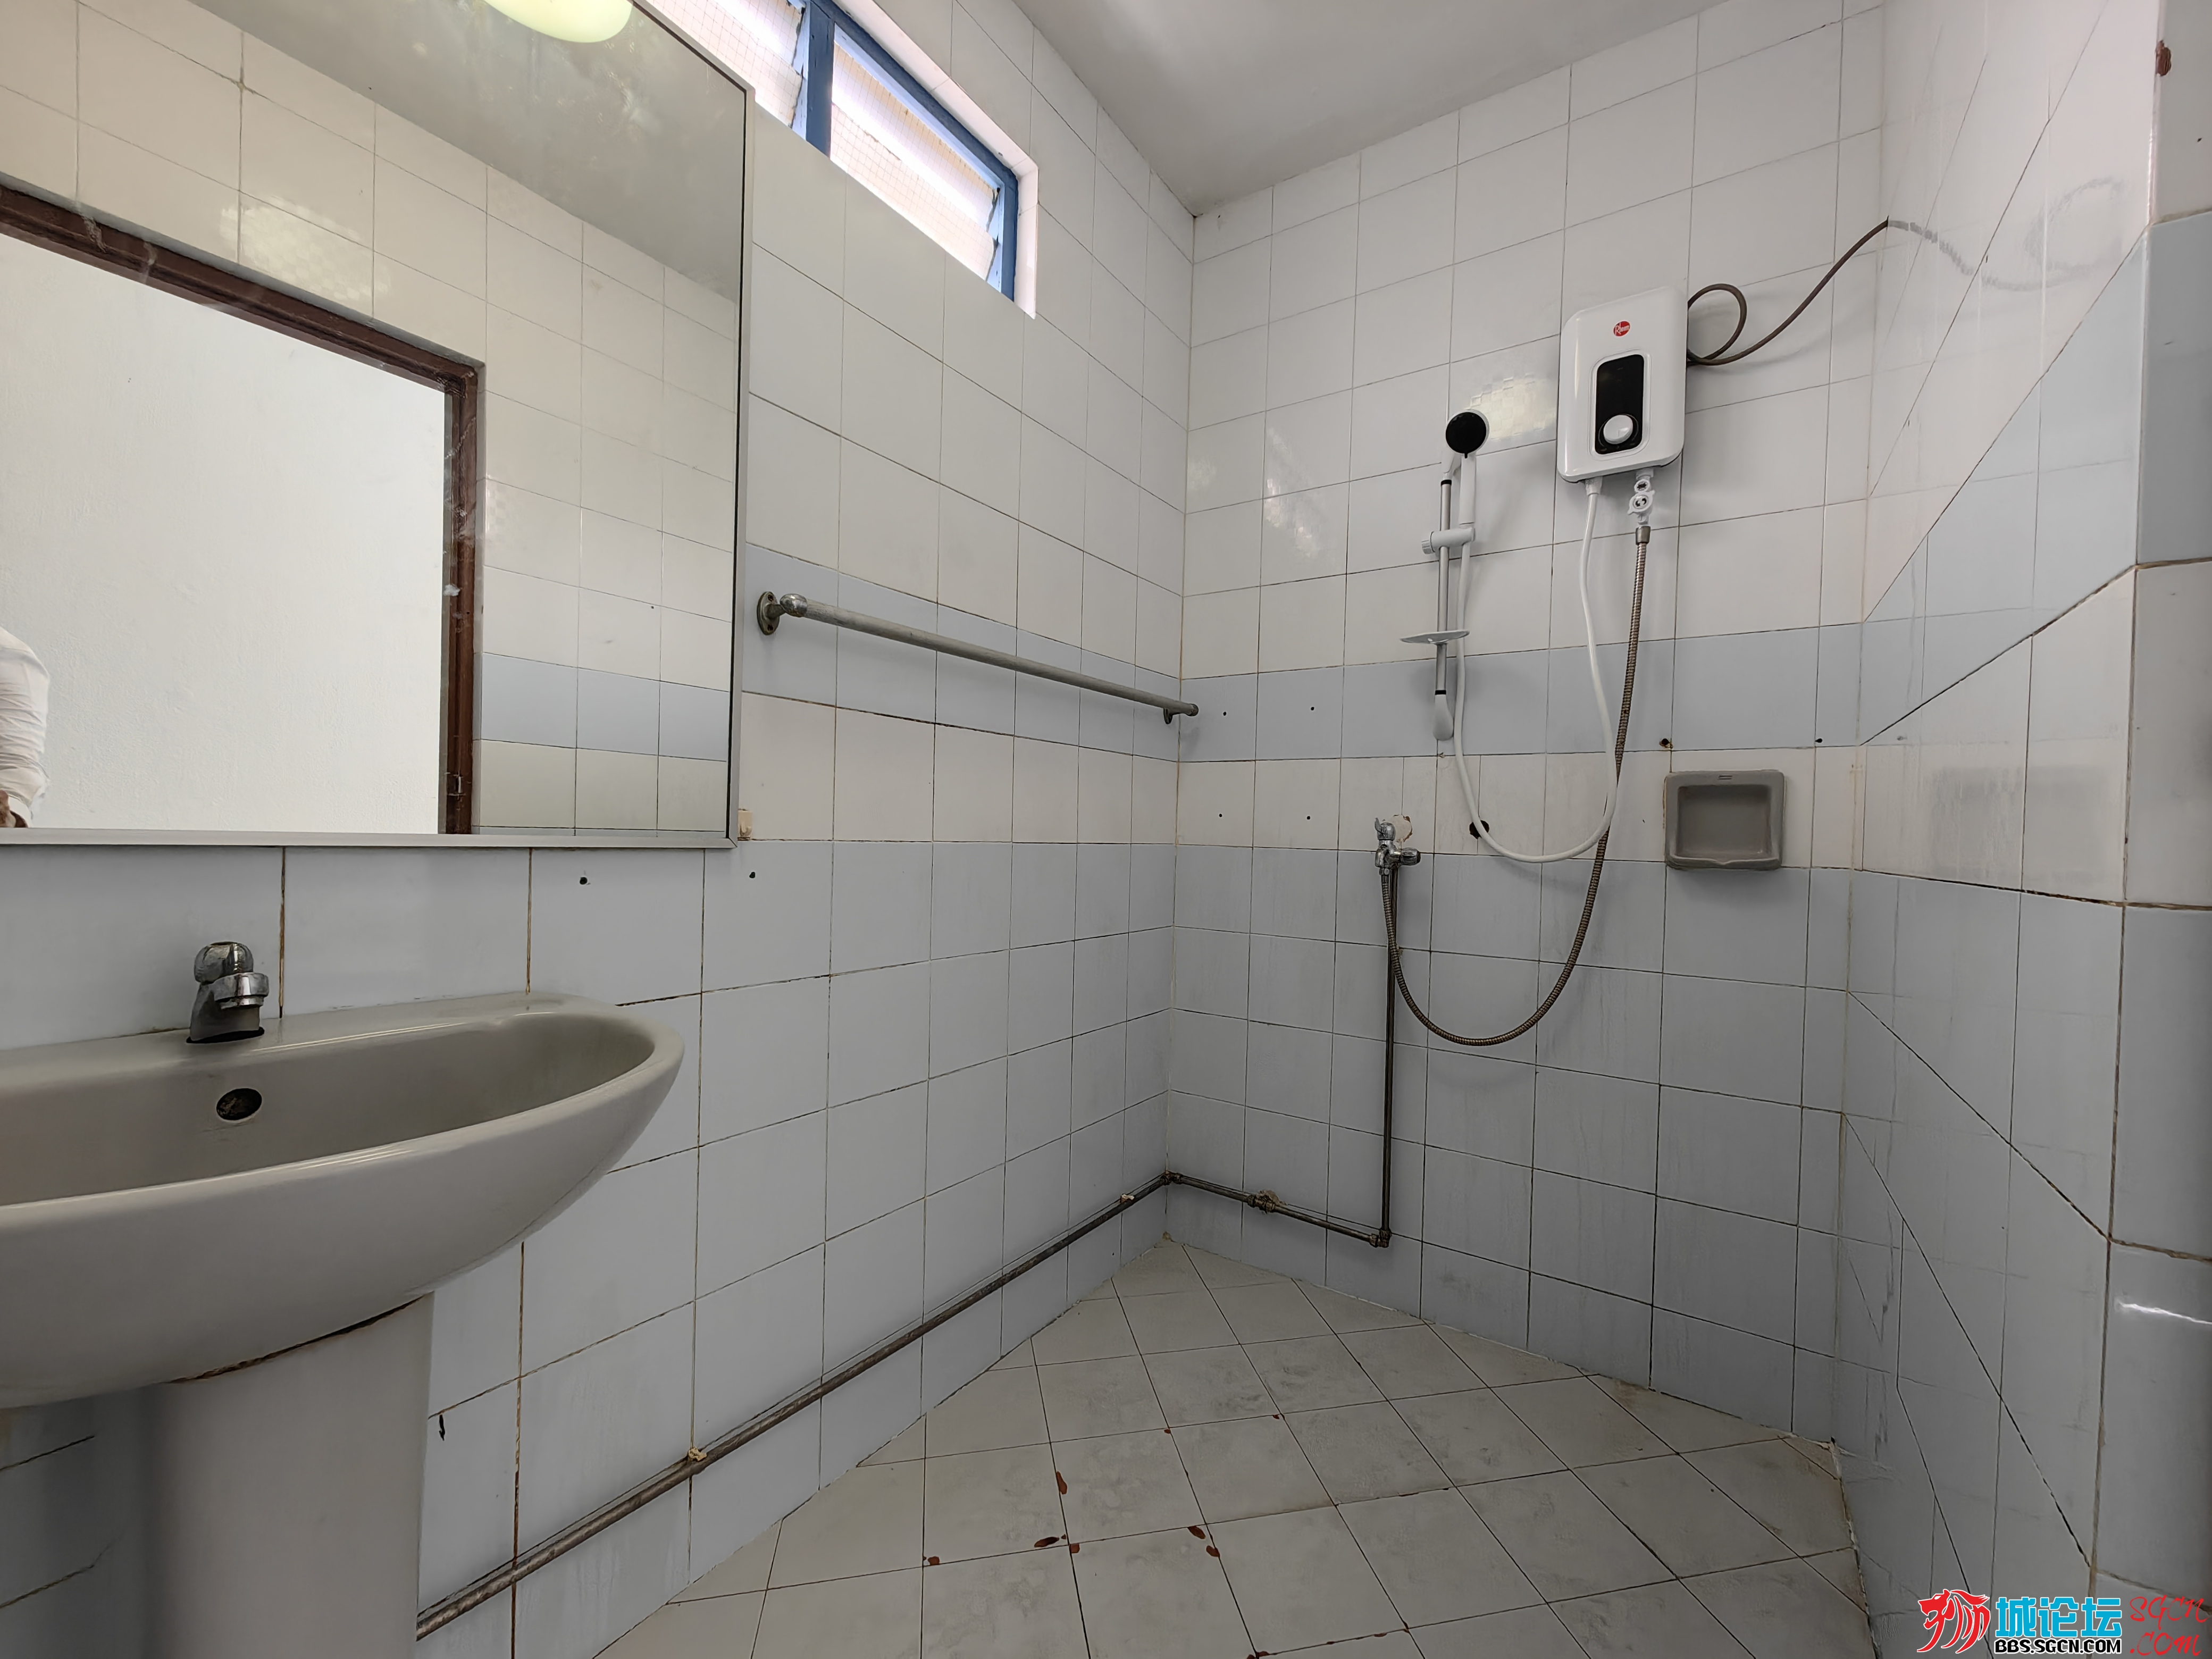 Common Toilet(Shower Area).jpg